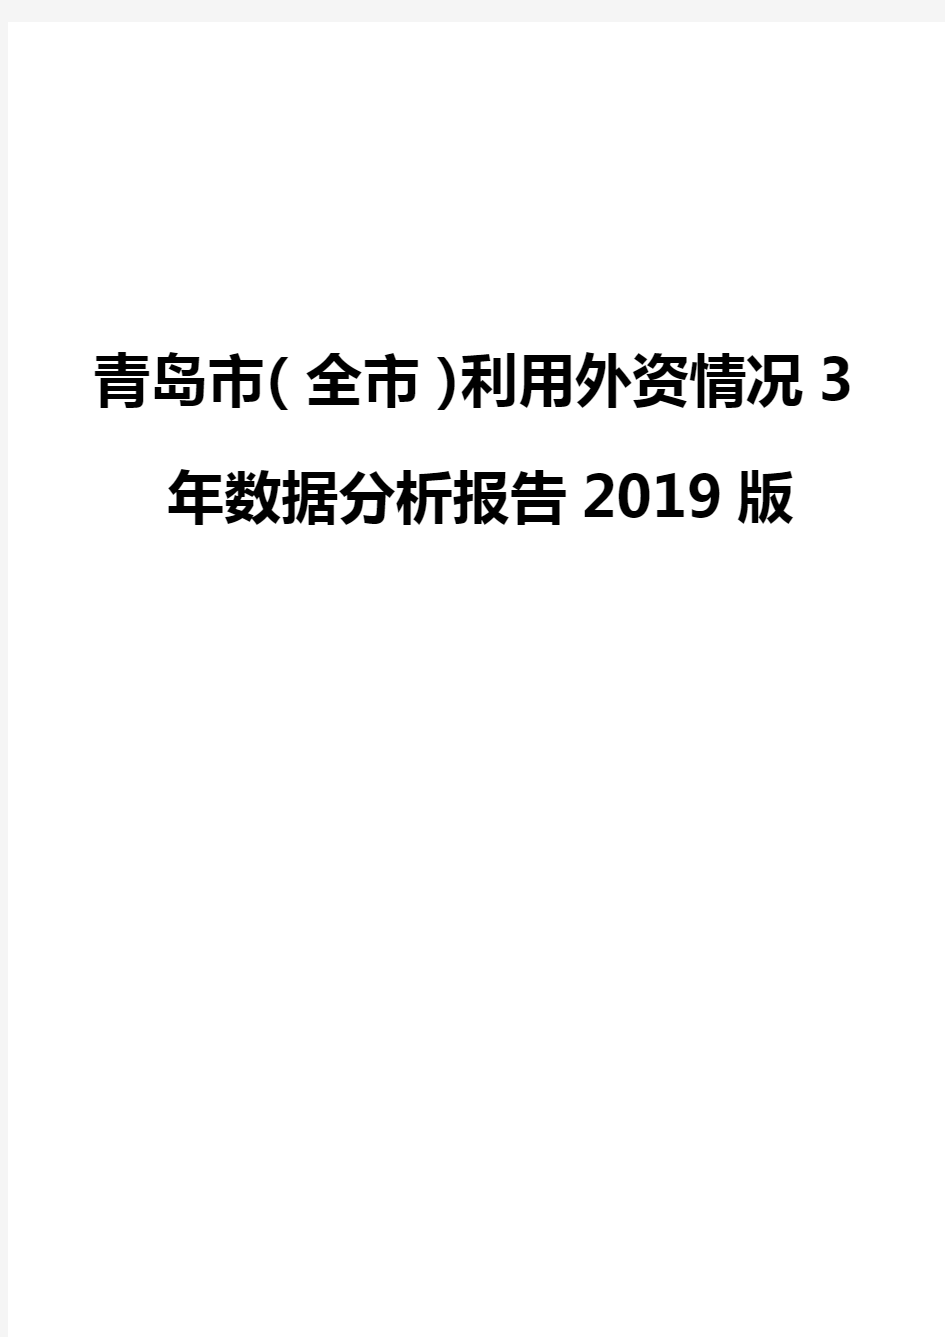 青岛市(全市)利用外资情况3年数据分析报告2019版